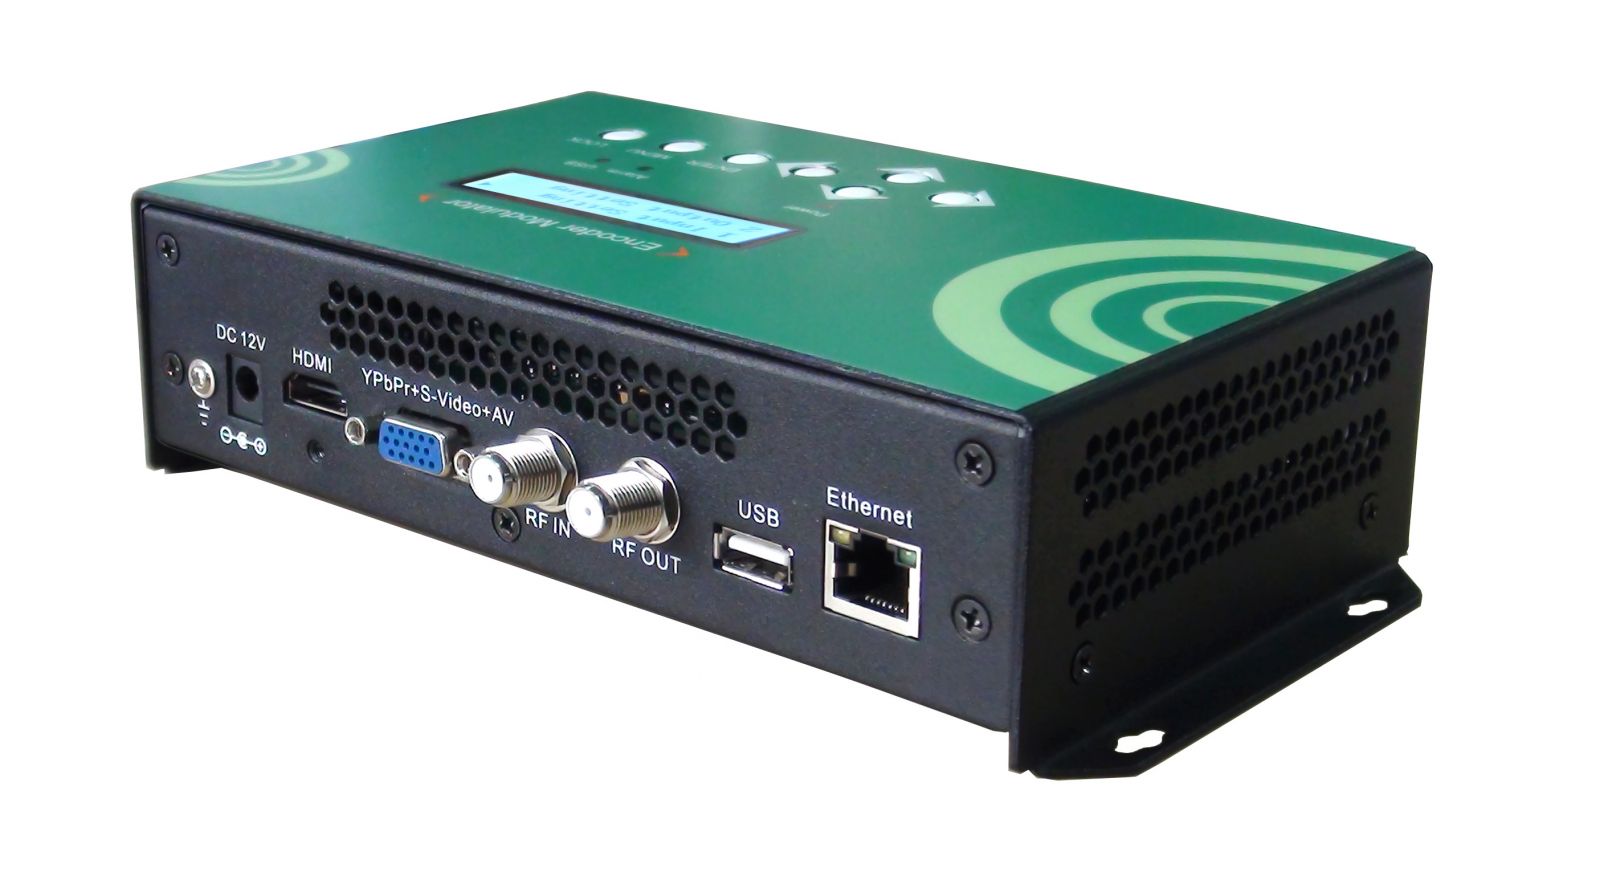  Modulador HDMI con salida DVB-C DVB-T ISDB-T ATSC : Electrónica